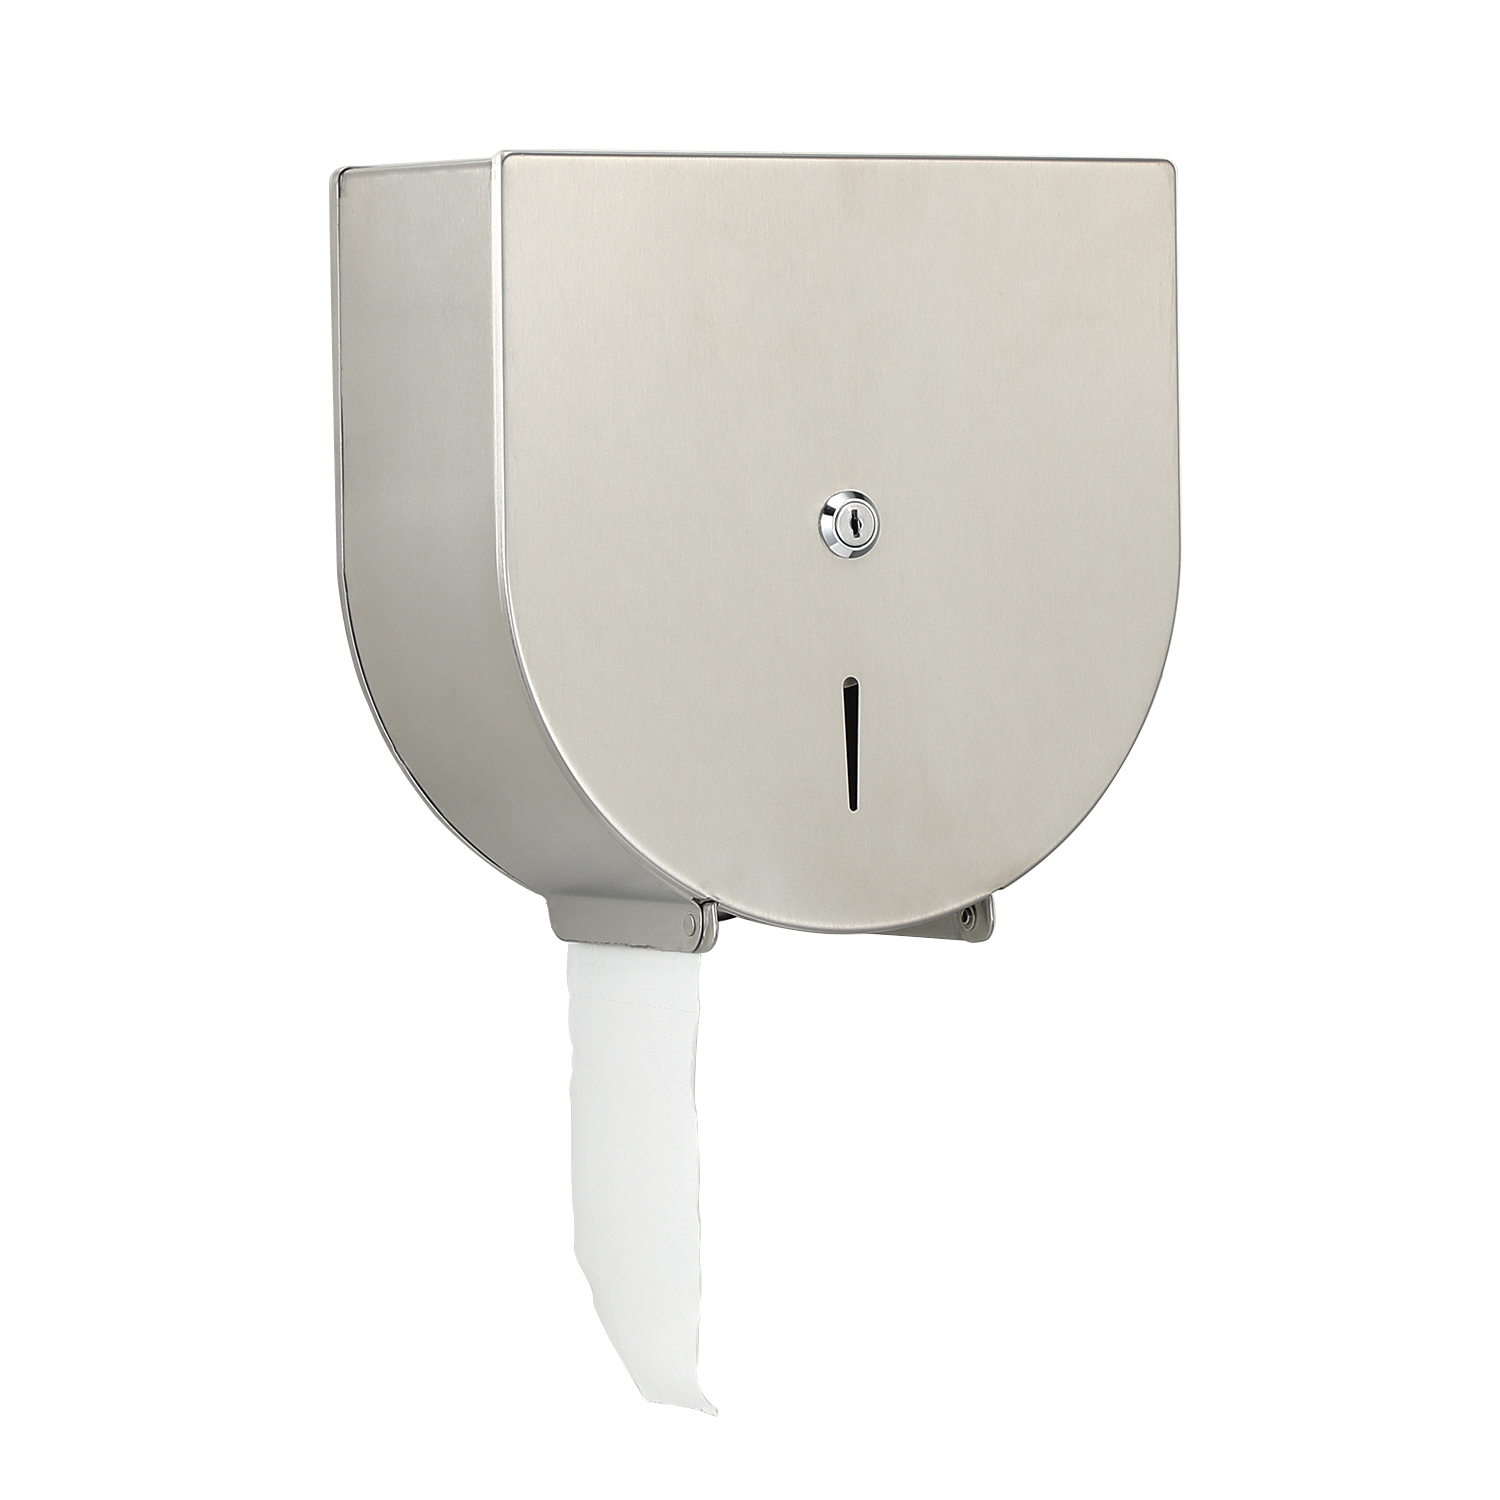 Stainless Steel Toilet Tissue Dispenser